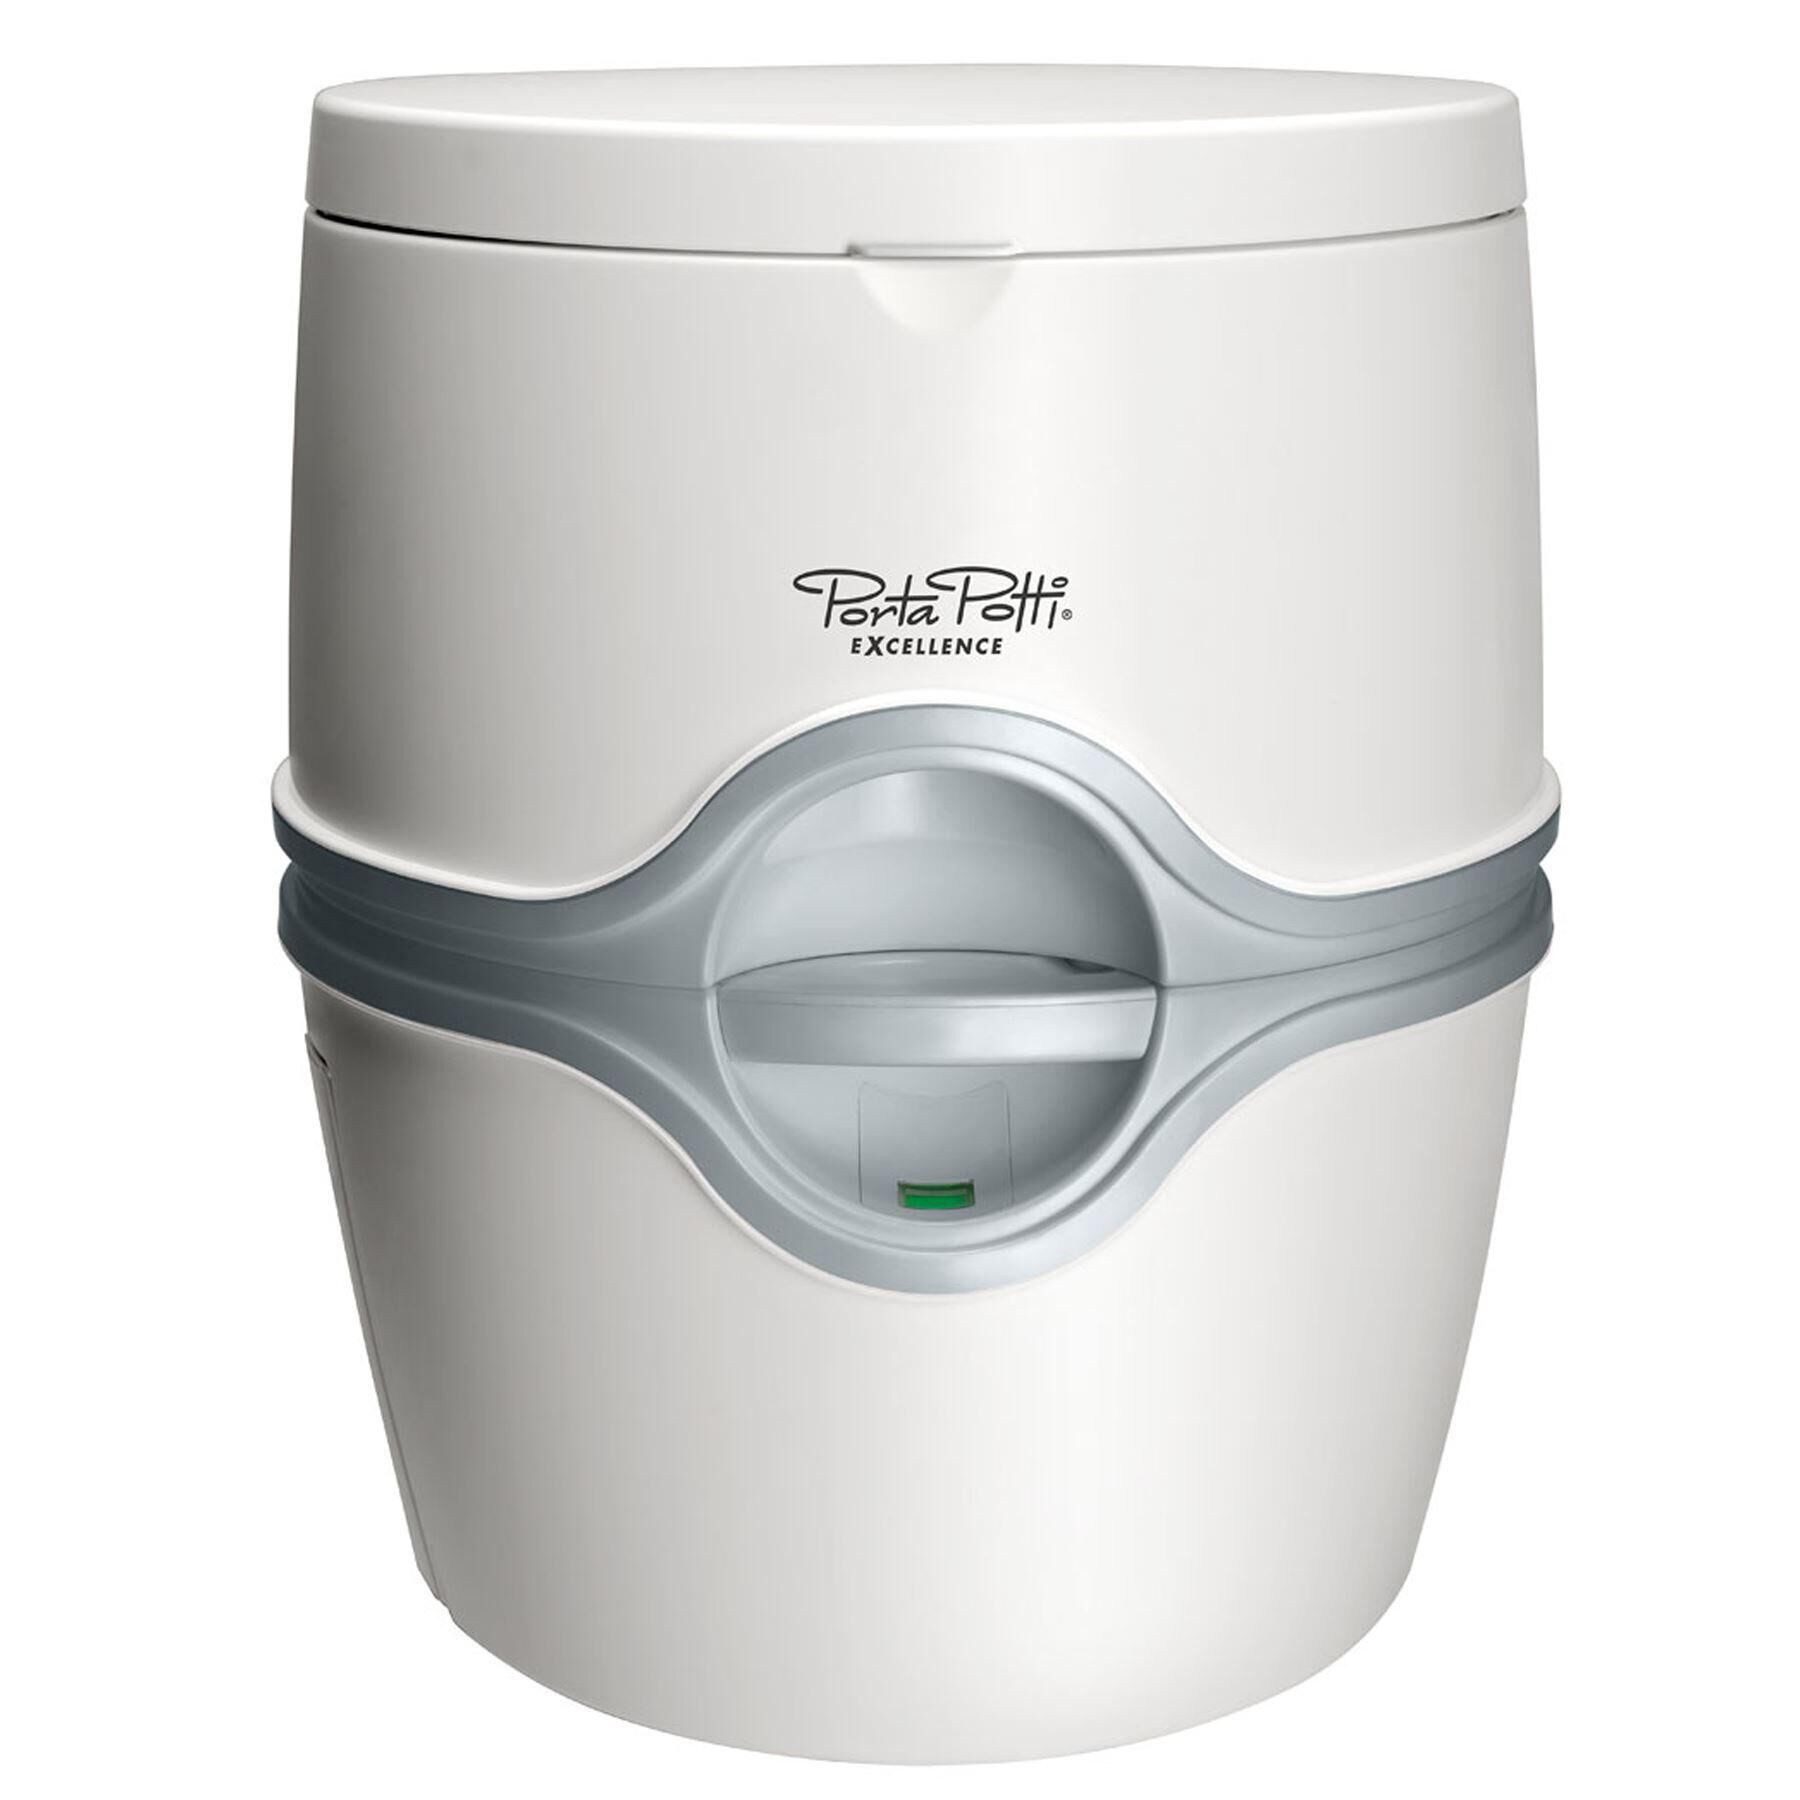 THETFORD Thetford Porta Potti Excellence 565E Electric Flush Premium Chemical Toilet